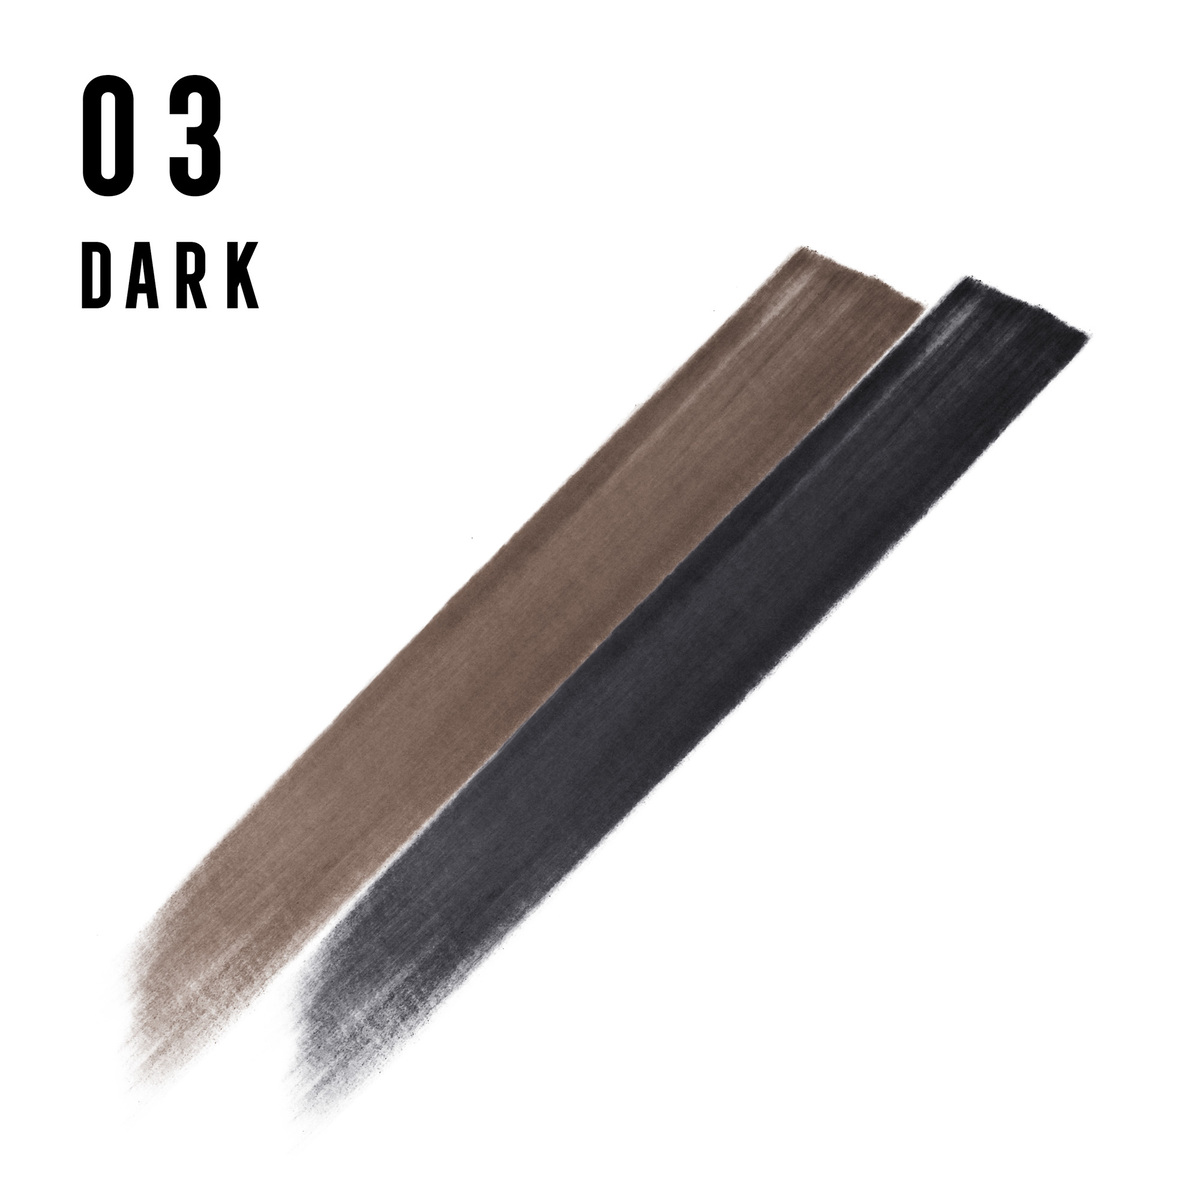 Max Factor Real Brow Duo Kit 03 Dark, 5.5 g